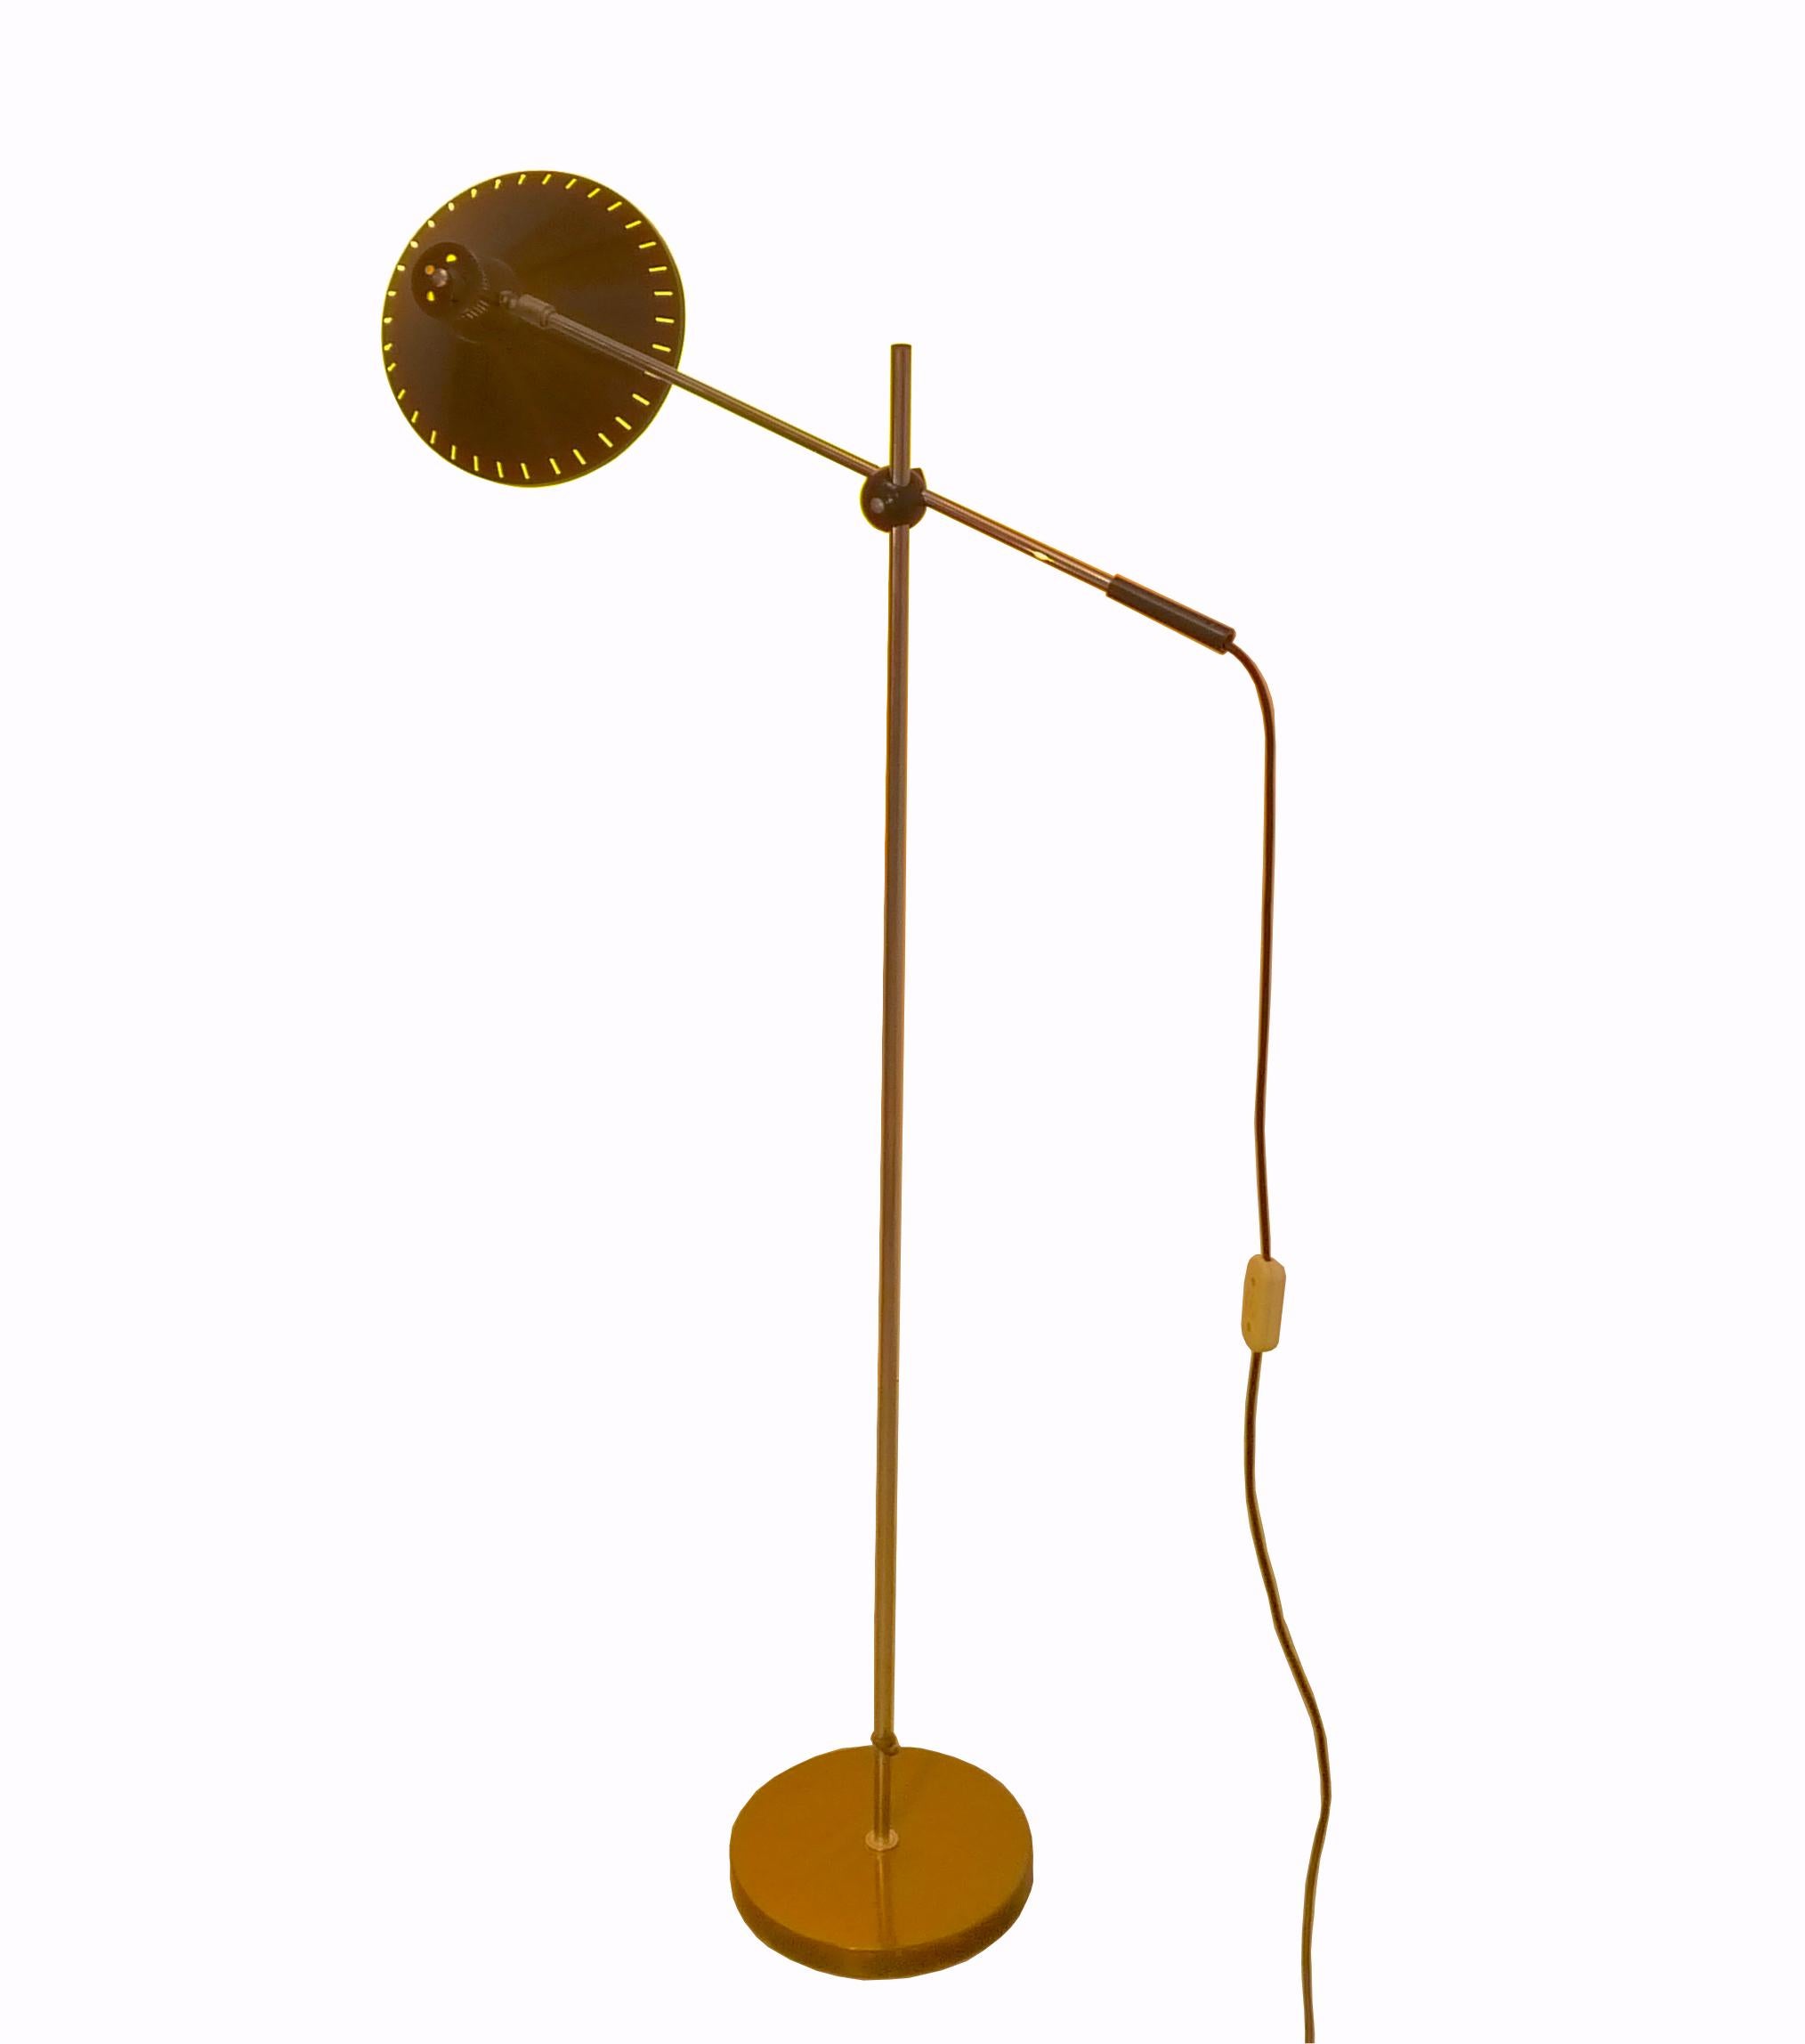 Verstellbare Anvia Stehleuchte, entworfen von J. Hoogervorst, ca. 1960. Diese Aluminiumlampe ist voll verstellbar und eignet sich für direktes Licht zum Lesen oder indirektes Licht an der Wand oder Decke. In Anbetracht ihres Alters ist diese